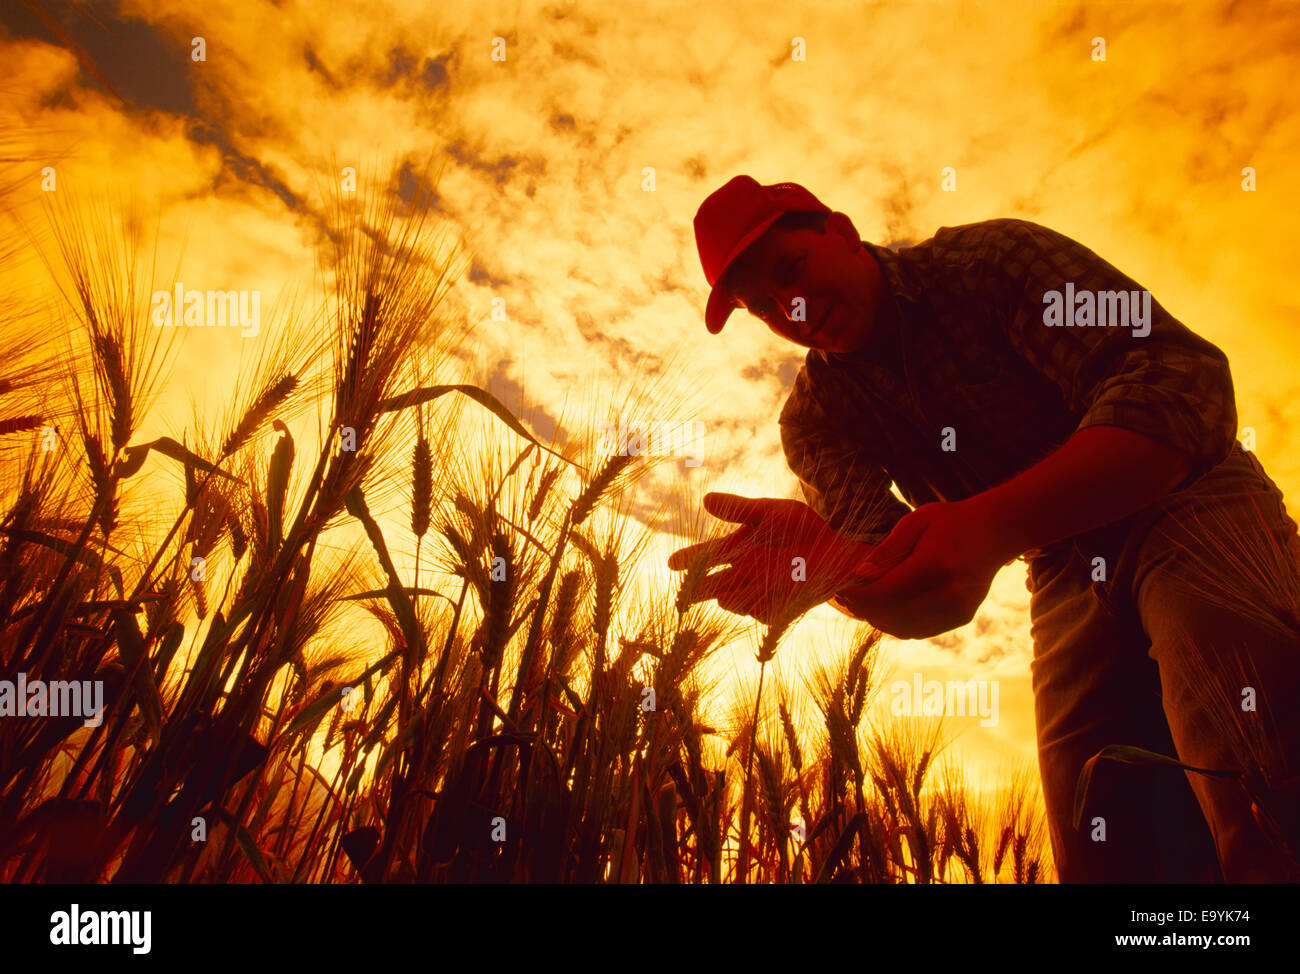 Landwirtschaft - ein Bauer von einem Sonnenuntergang Silhouette inspiziert seine Ernte bereit Gerste / Manitoba, Kanada. Stockfoto